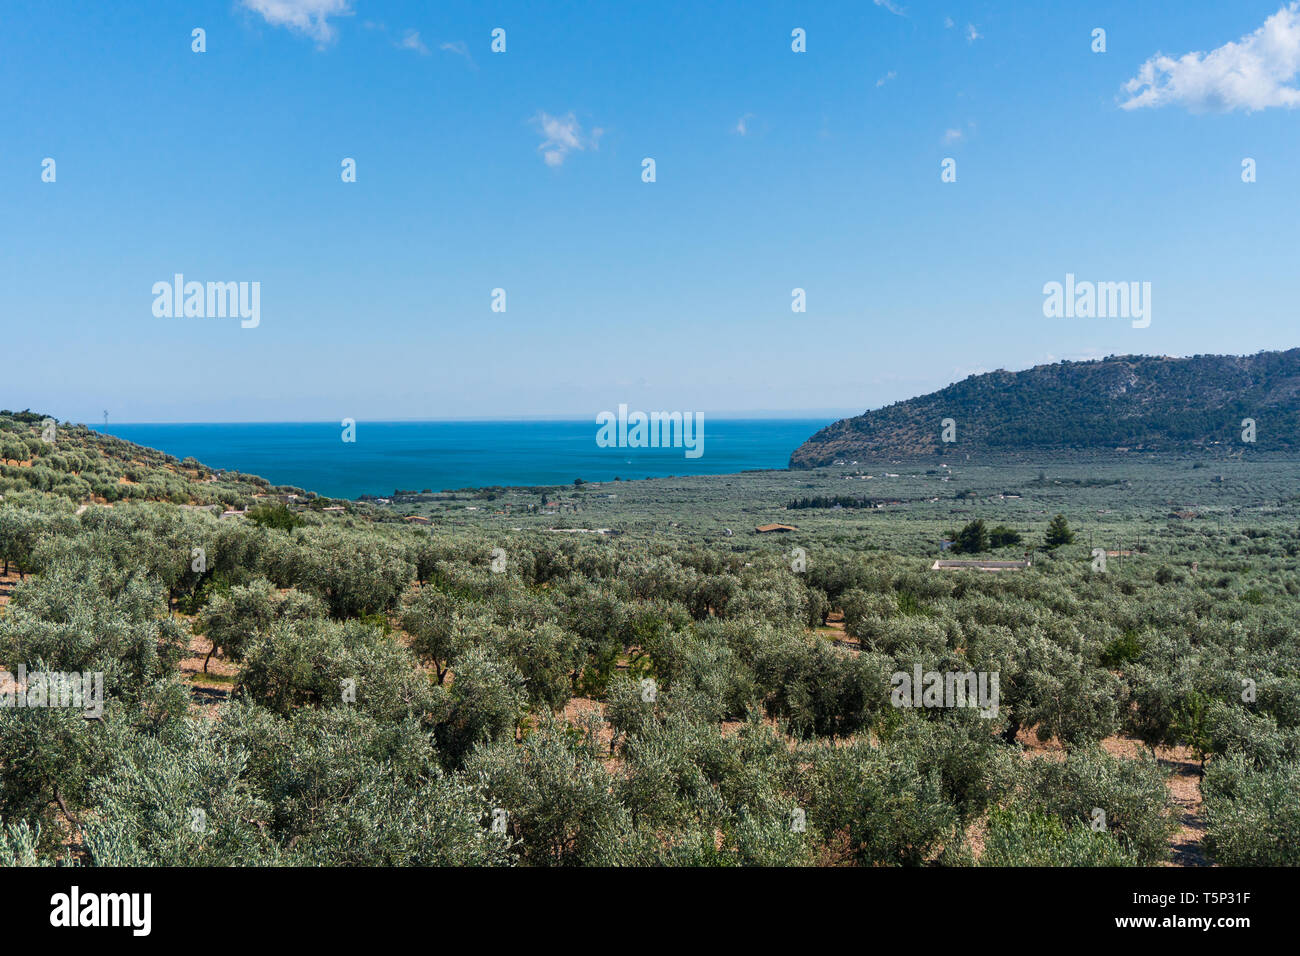 Un olivar con un hermoso mar azul en el horizonte. Olivar en el valle. Las montañas son visibles en la distancia Foto de stock